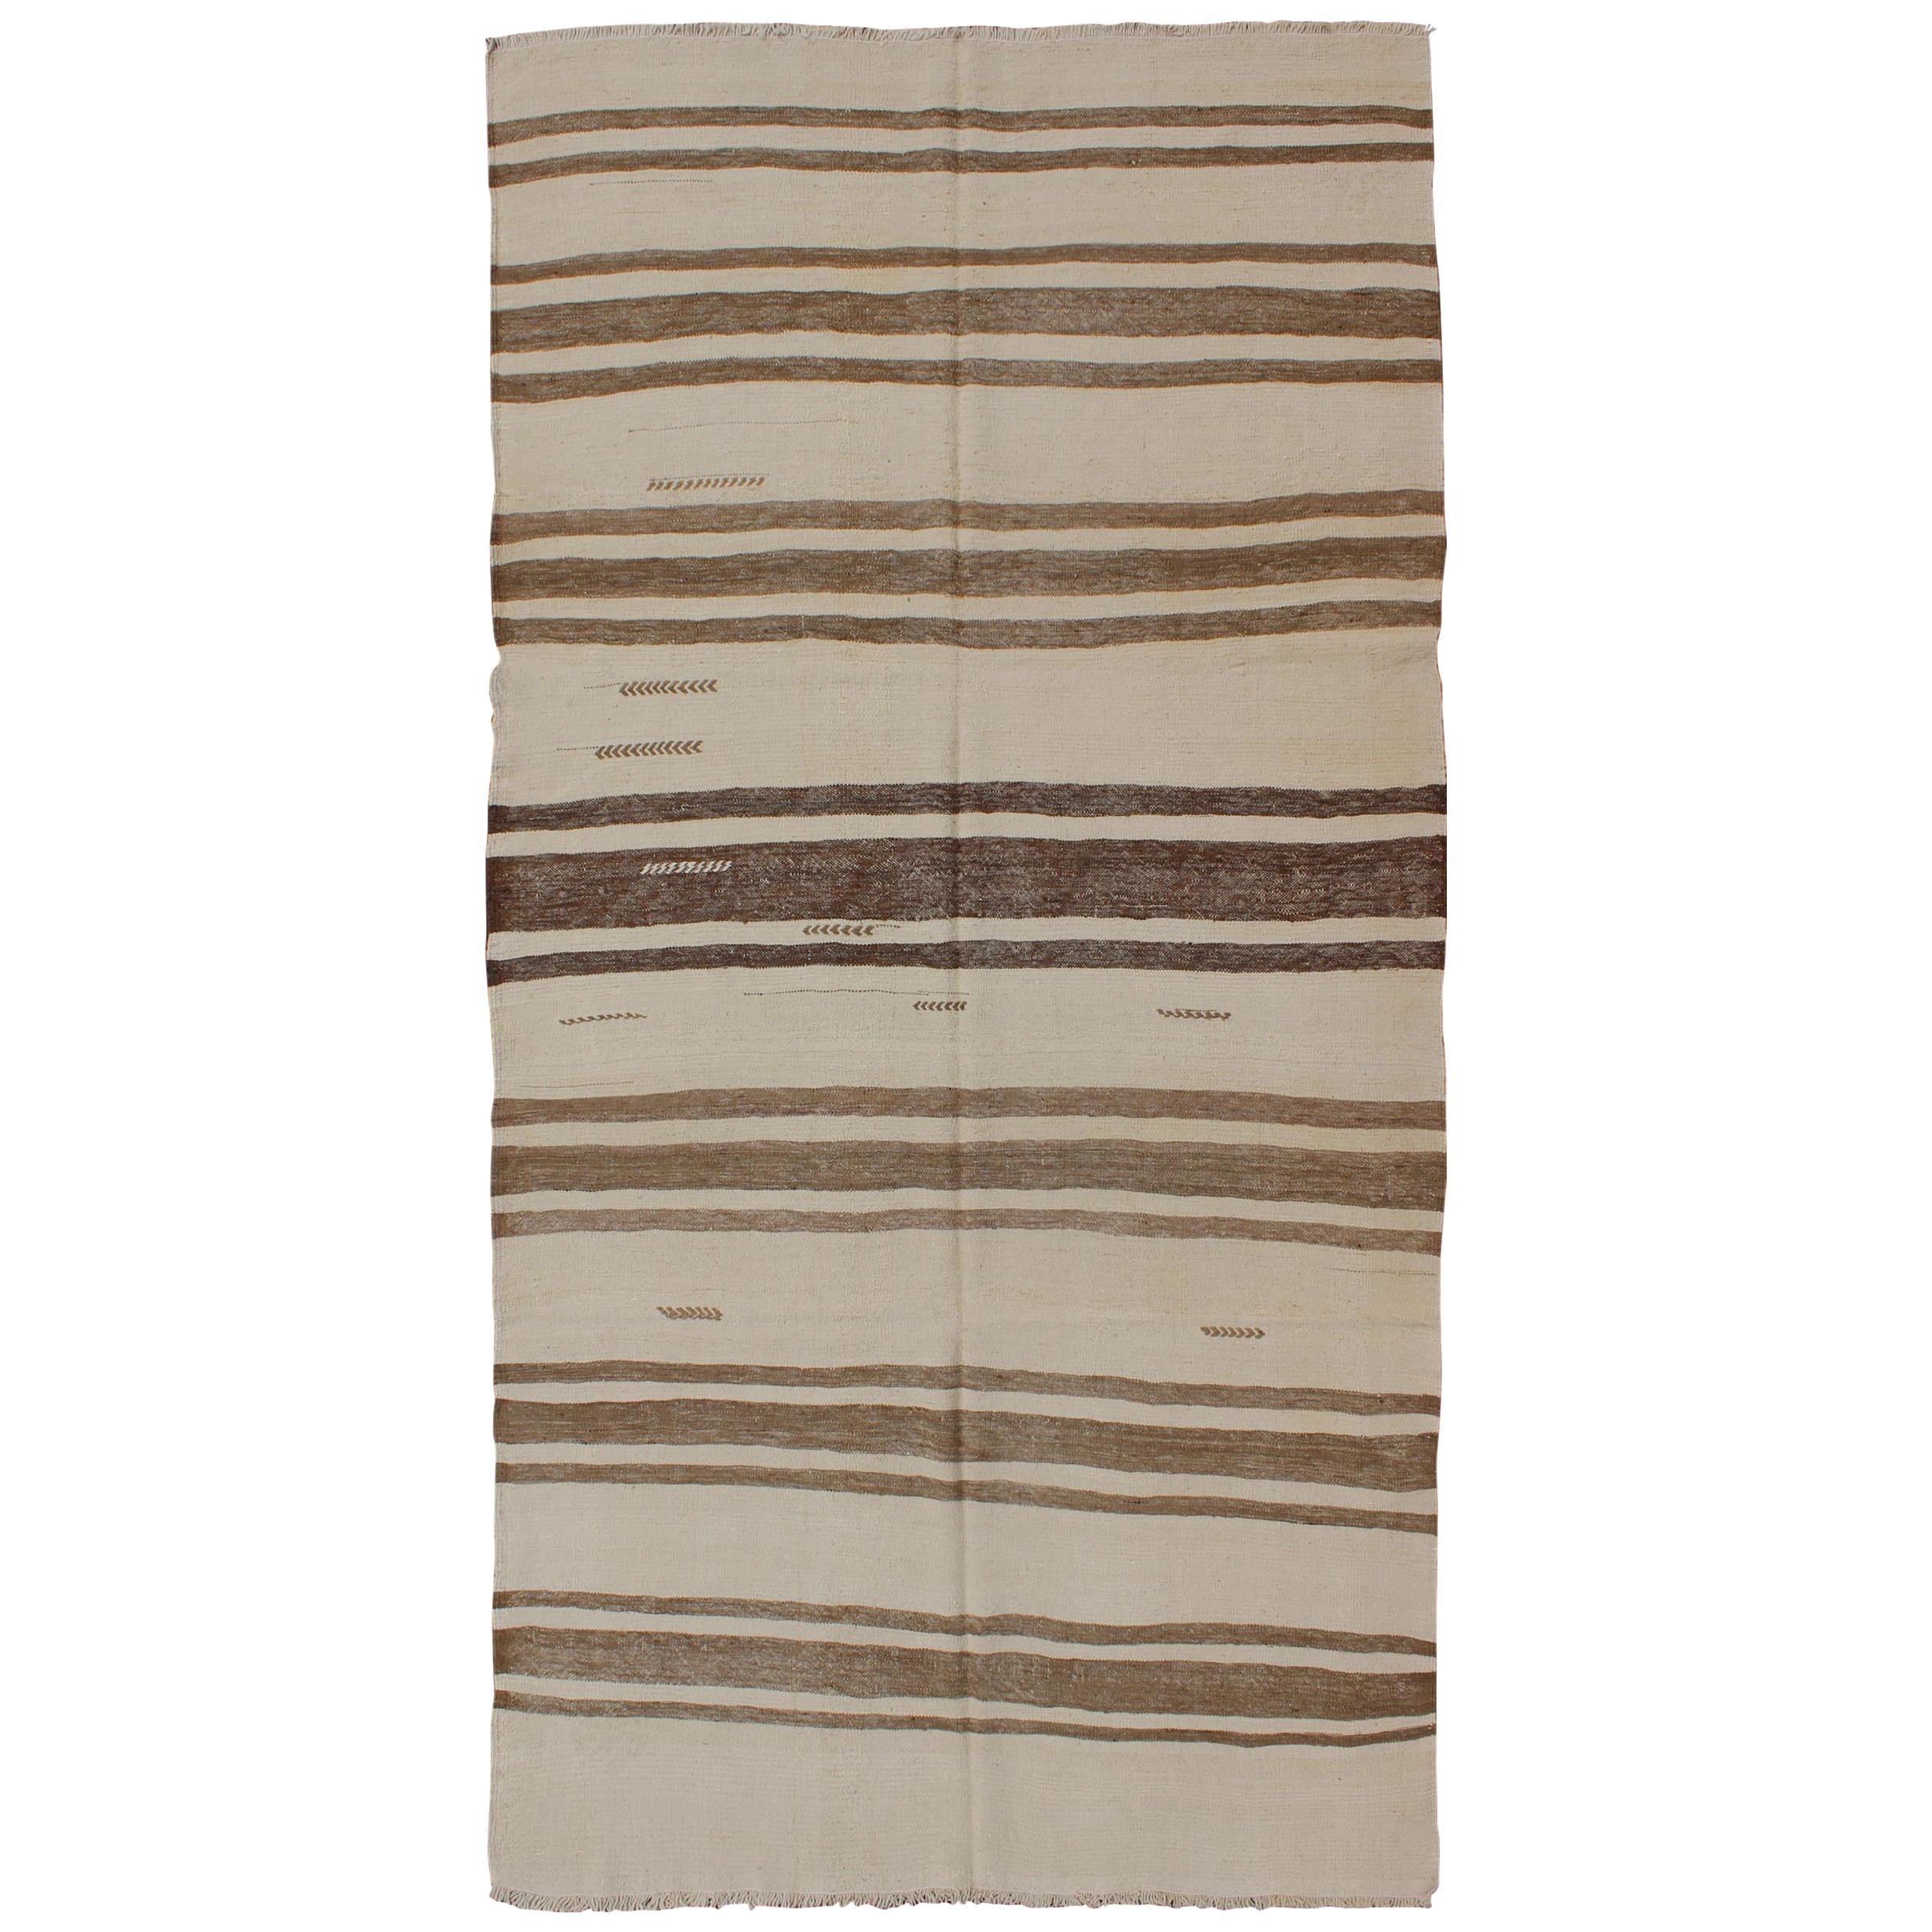 Türkischer Flachgewebter Kelim-Teppich im Vintage-Stil in Braun und Creme mit Streifenmuster